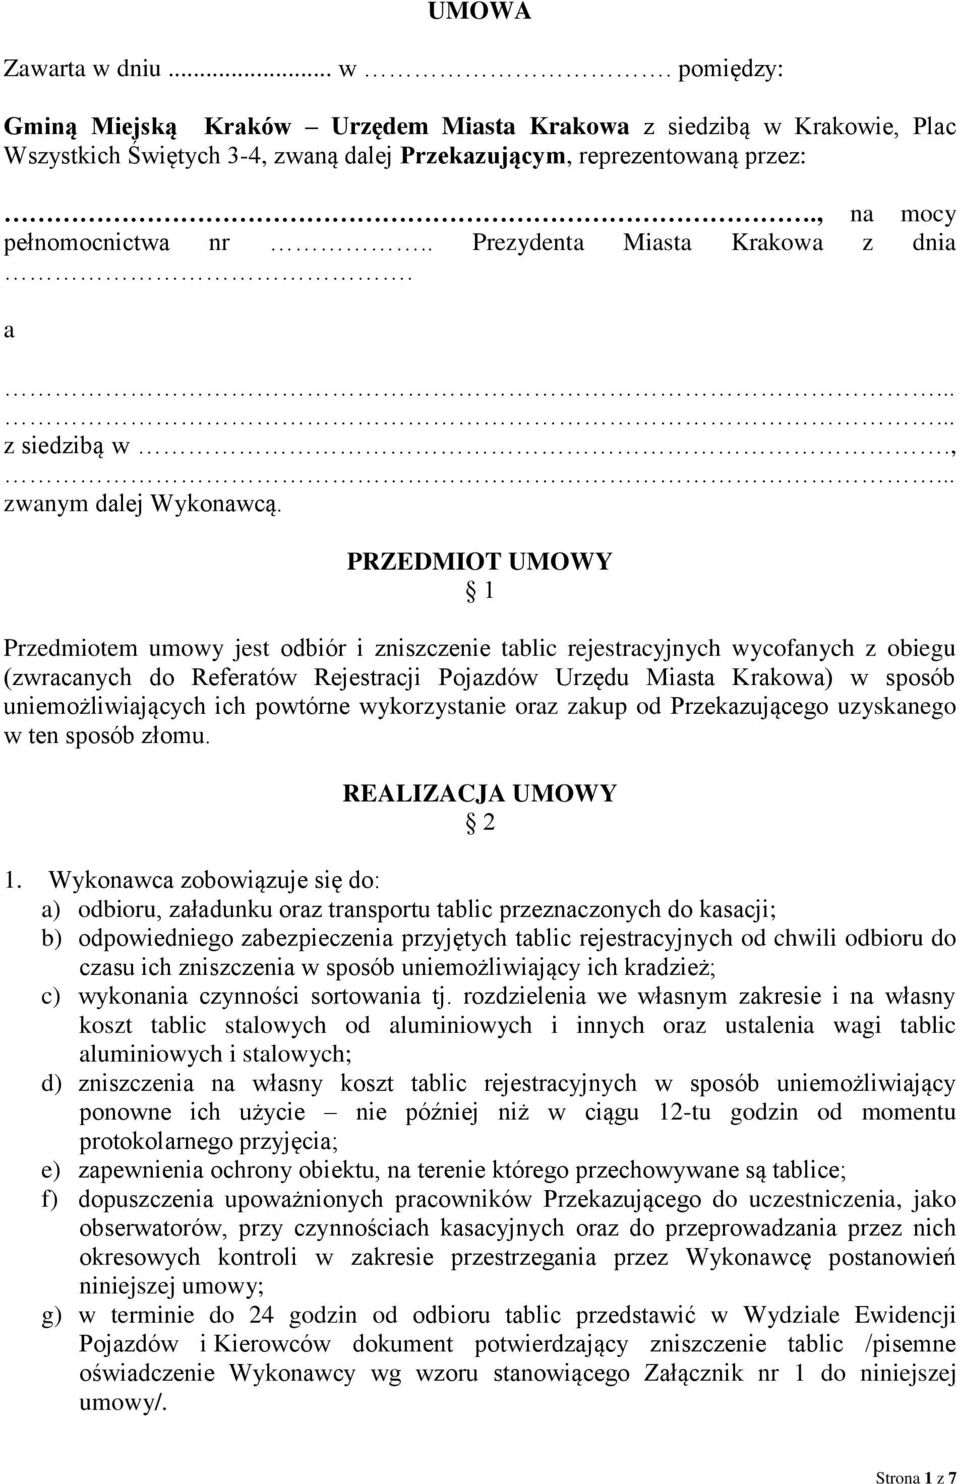 PRZEDMIOT UMOWY 1 Przedmiotem umowy jest odbiór i zniszczenie tablic rejestracyjnych wycofanych z obiegu (zwracanych do Referatów Rejestracji Pojazdów Urzędu Miasta Krakowa) w sposób